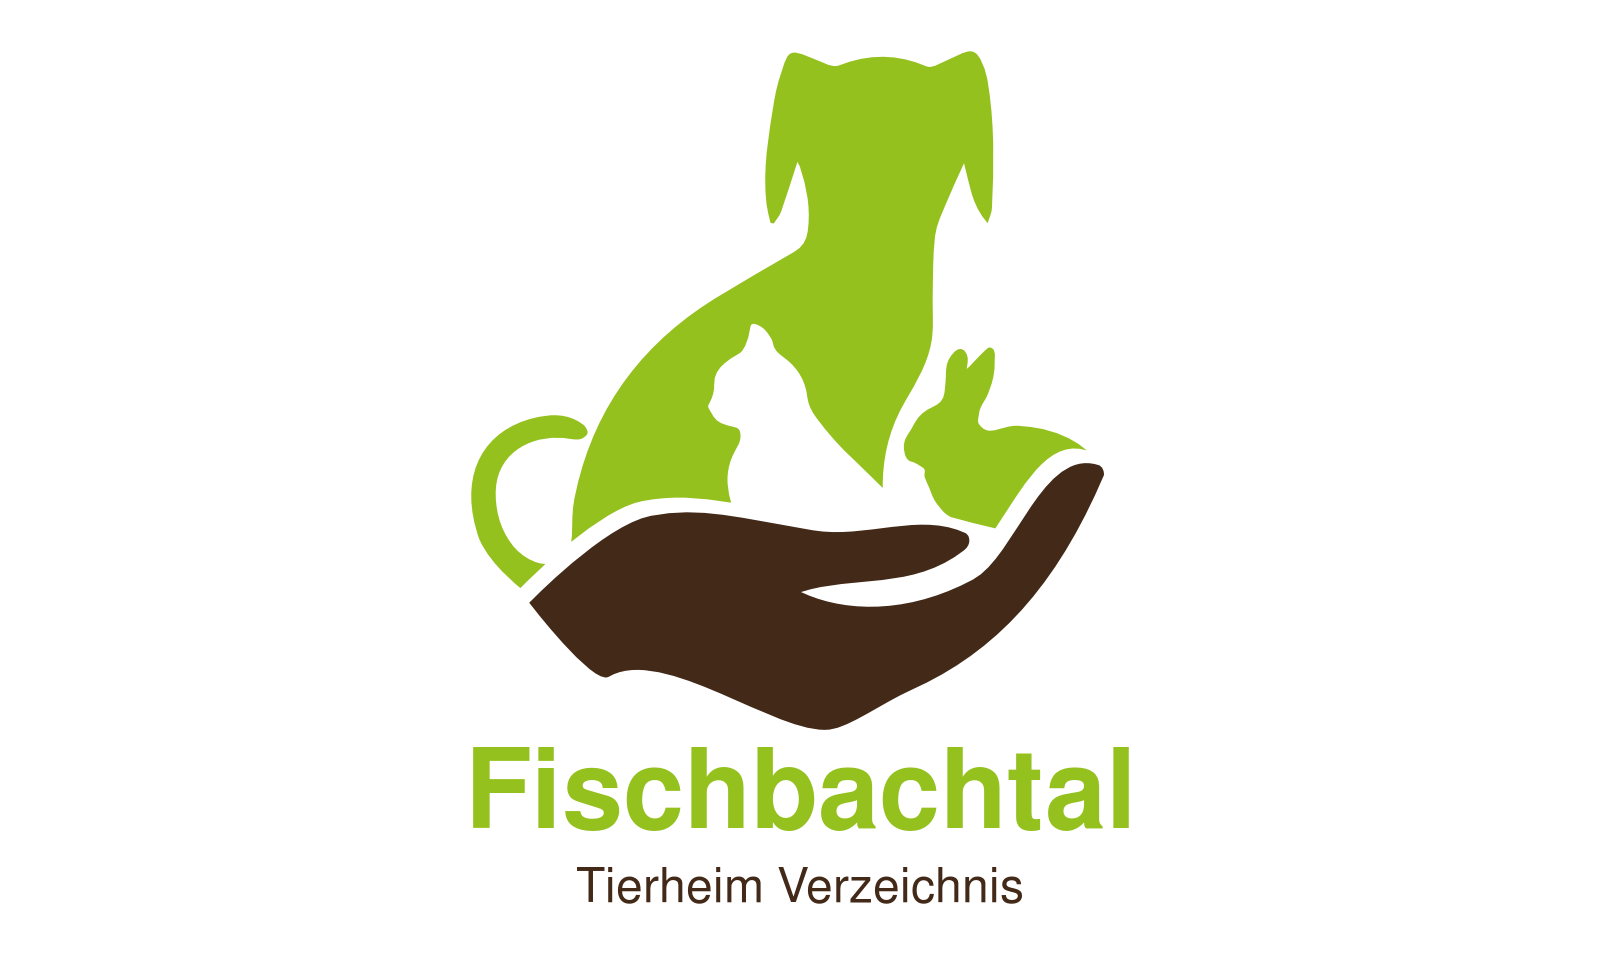 Tierheim Fischbachtal